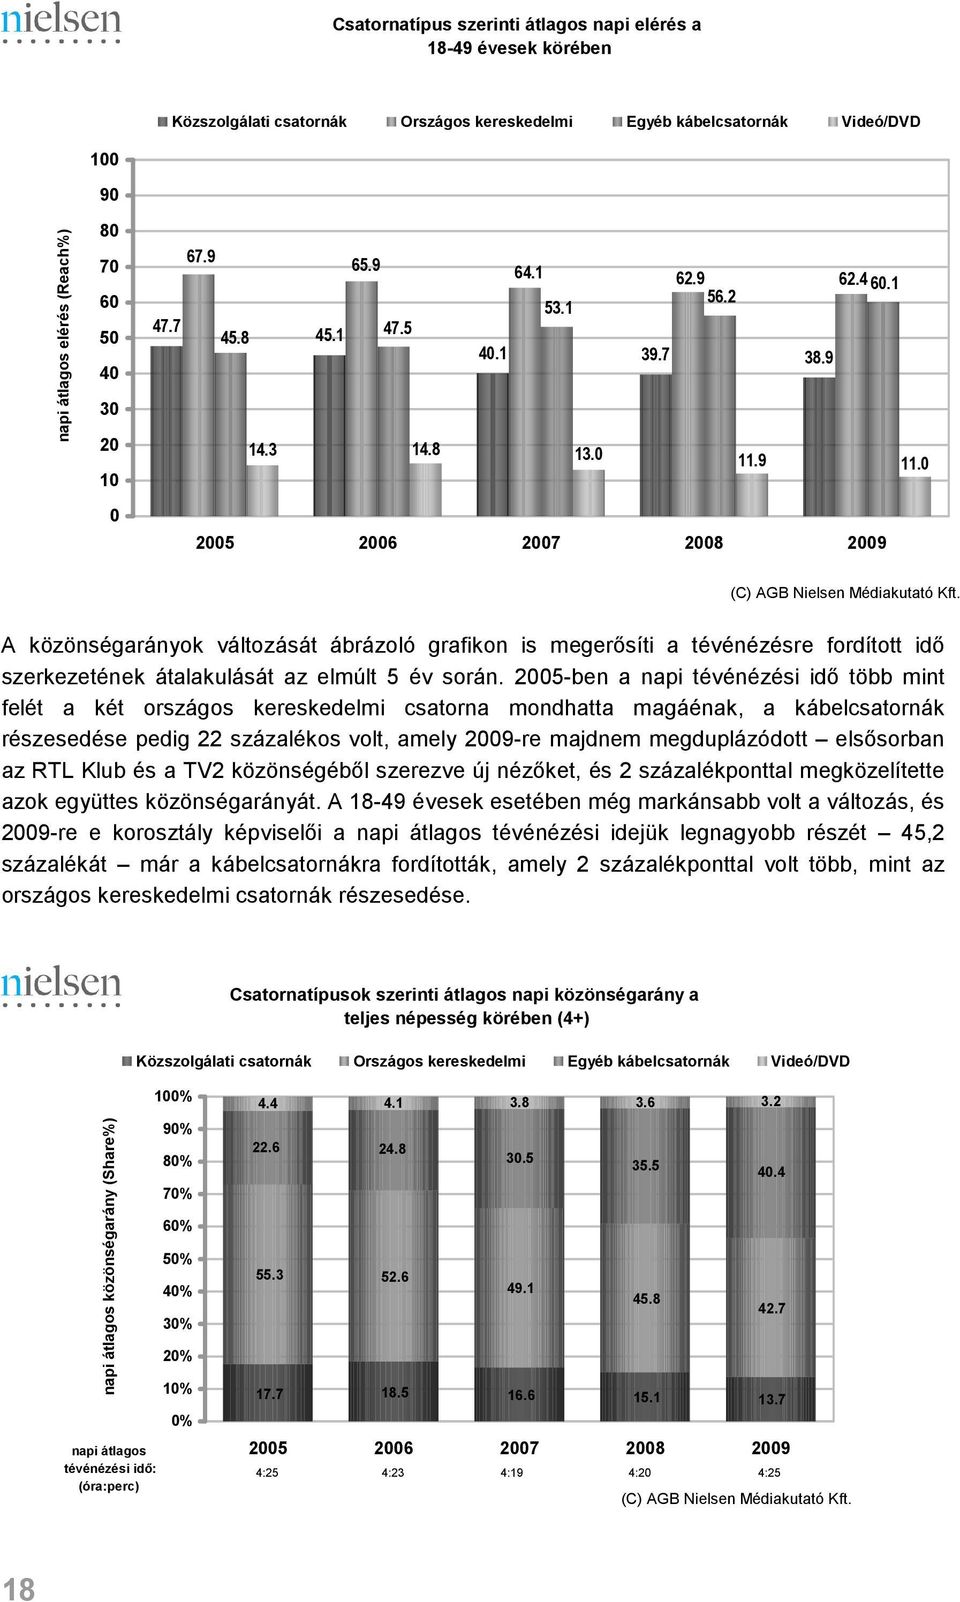 A közönségarányok változását ábrázoló grafikon is megerısíti a tévénézésre fordított idı szerkezetének átalakulását az elmúlt 5 év során.